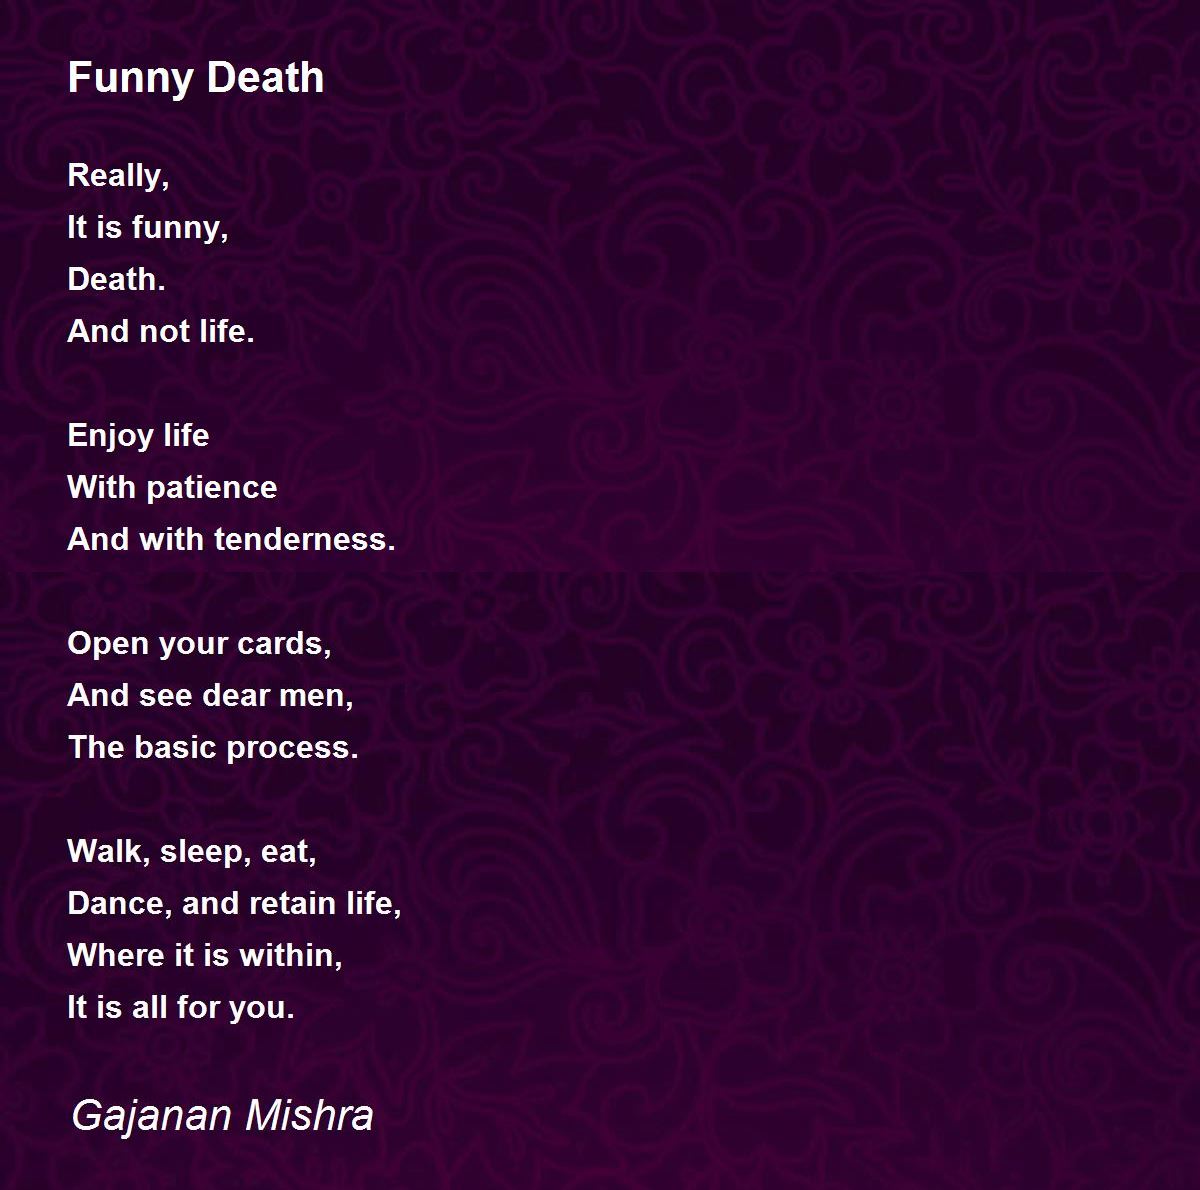 Funny Death - Funny Death Poem by Gajanan Mishra